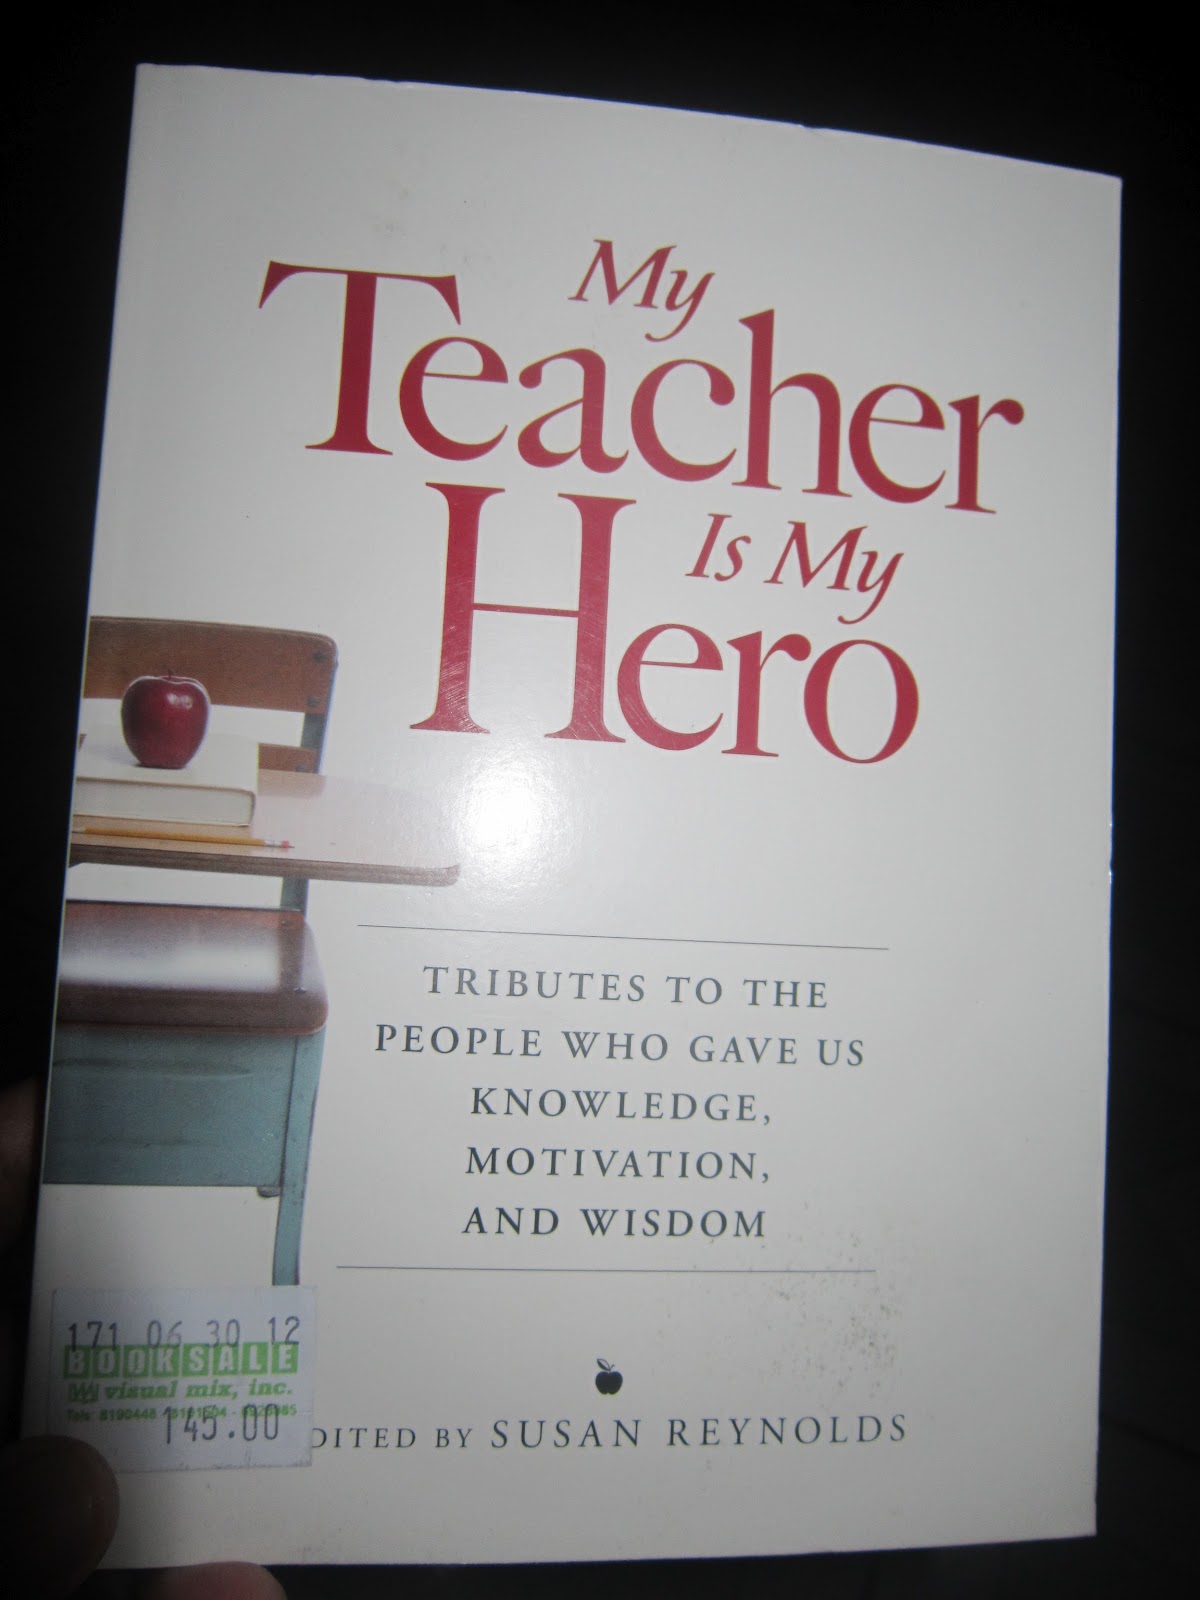 My teacher is nice. Teacher Hero.